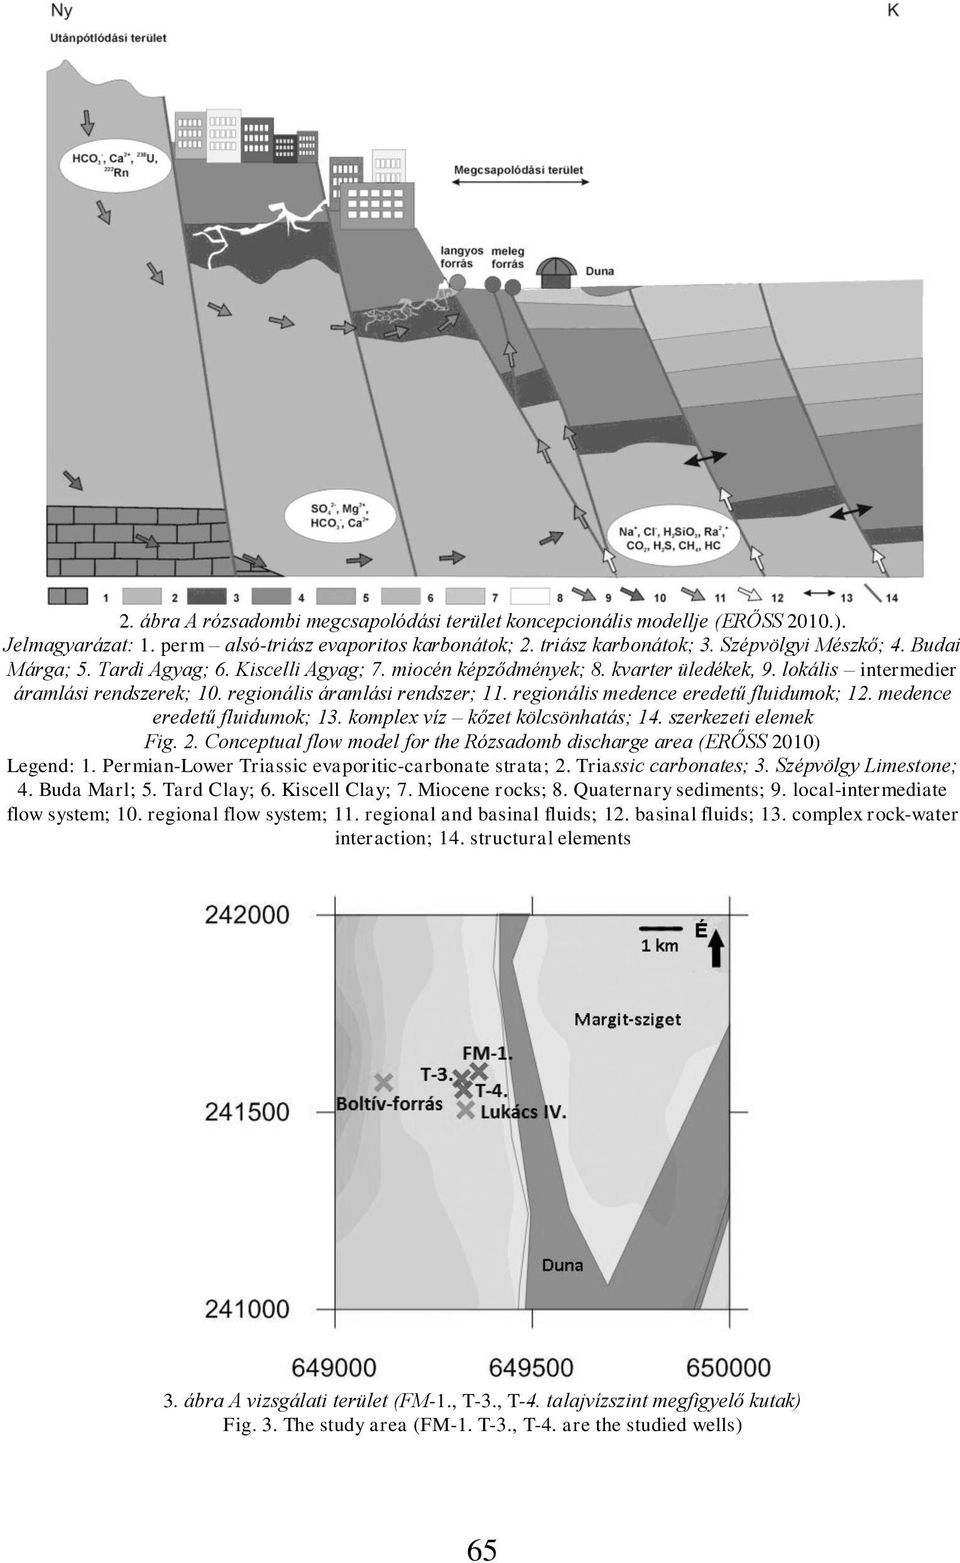 regionális medence eredetű fluidumok; 12. medence eredetű fluidumok; 13. komplex víz kőzet kölcsönhatás; 14. szerkezeti elemek Fig. 2.